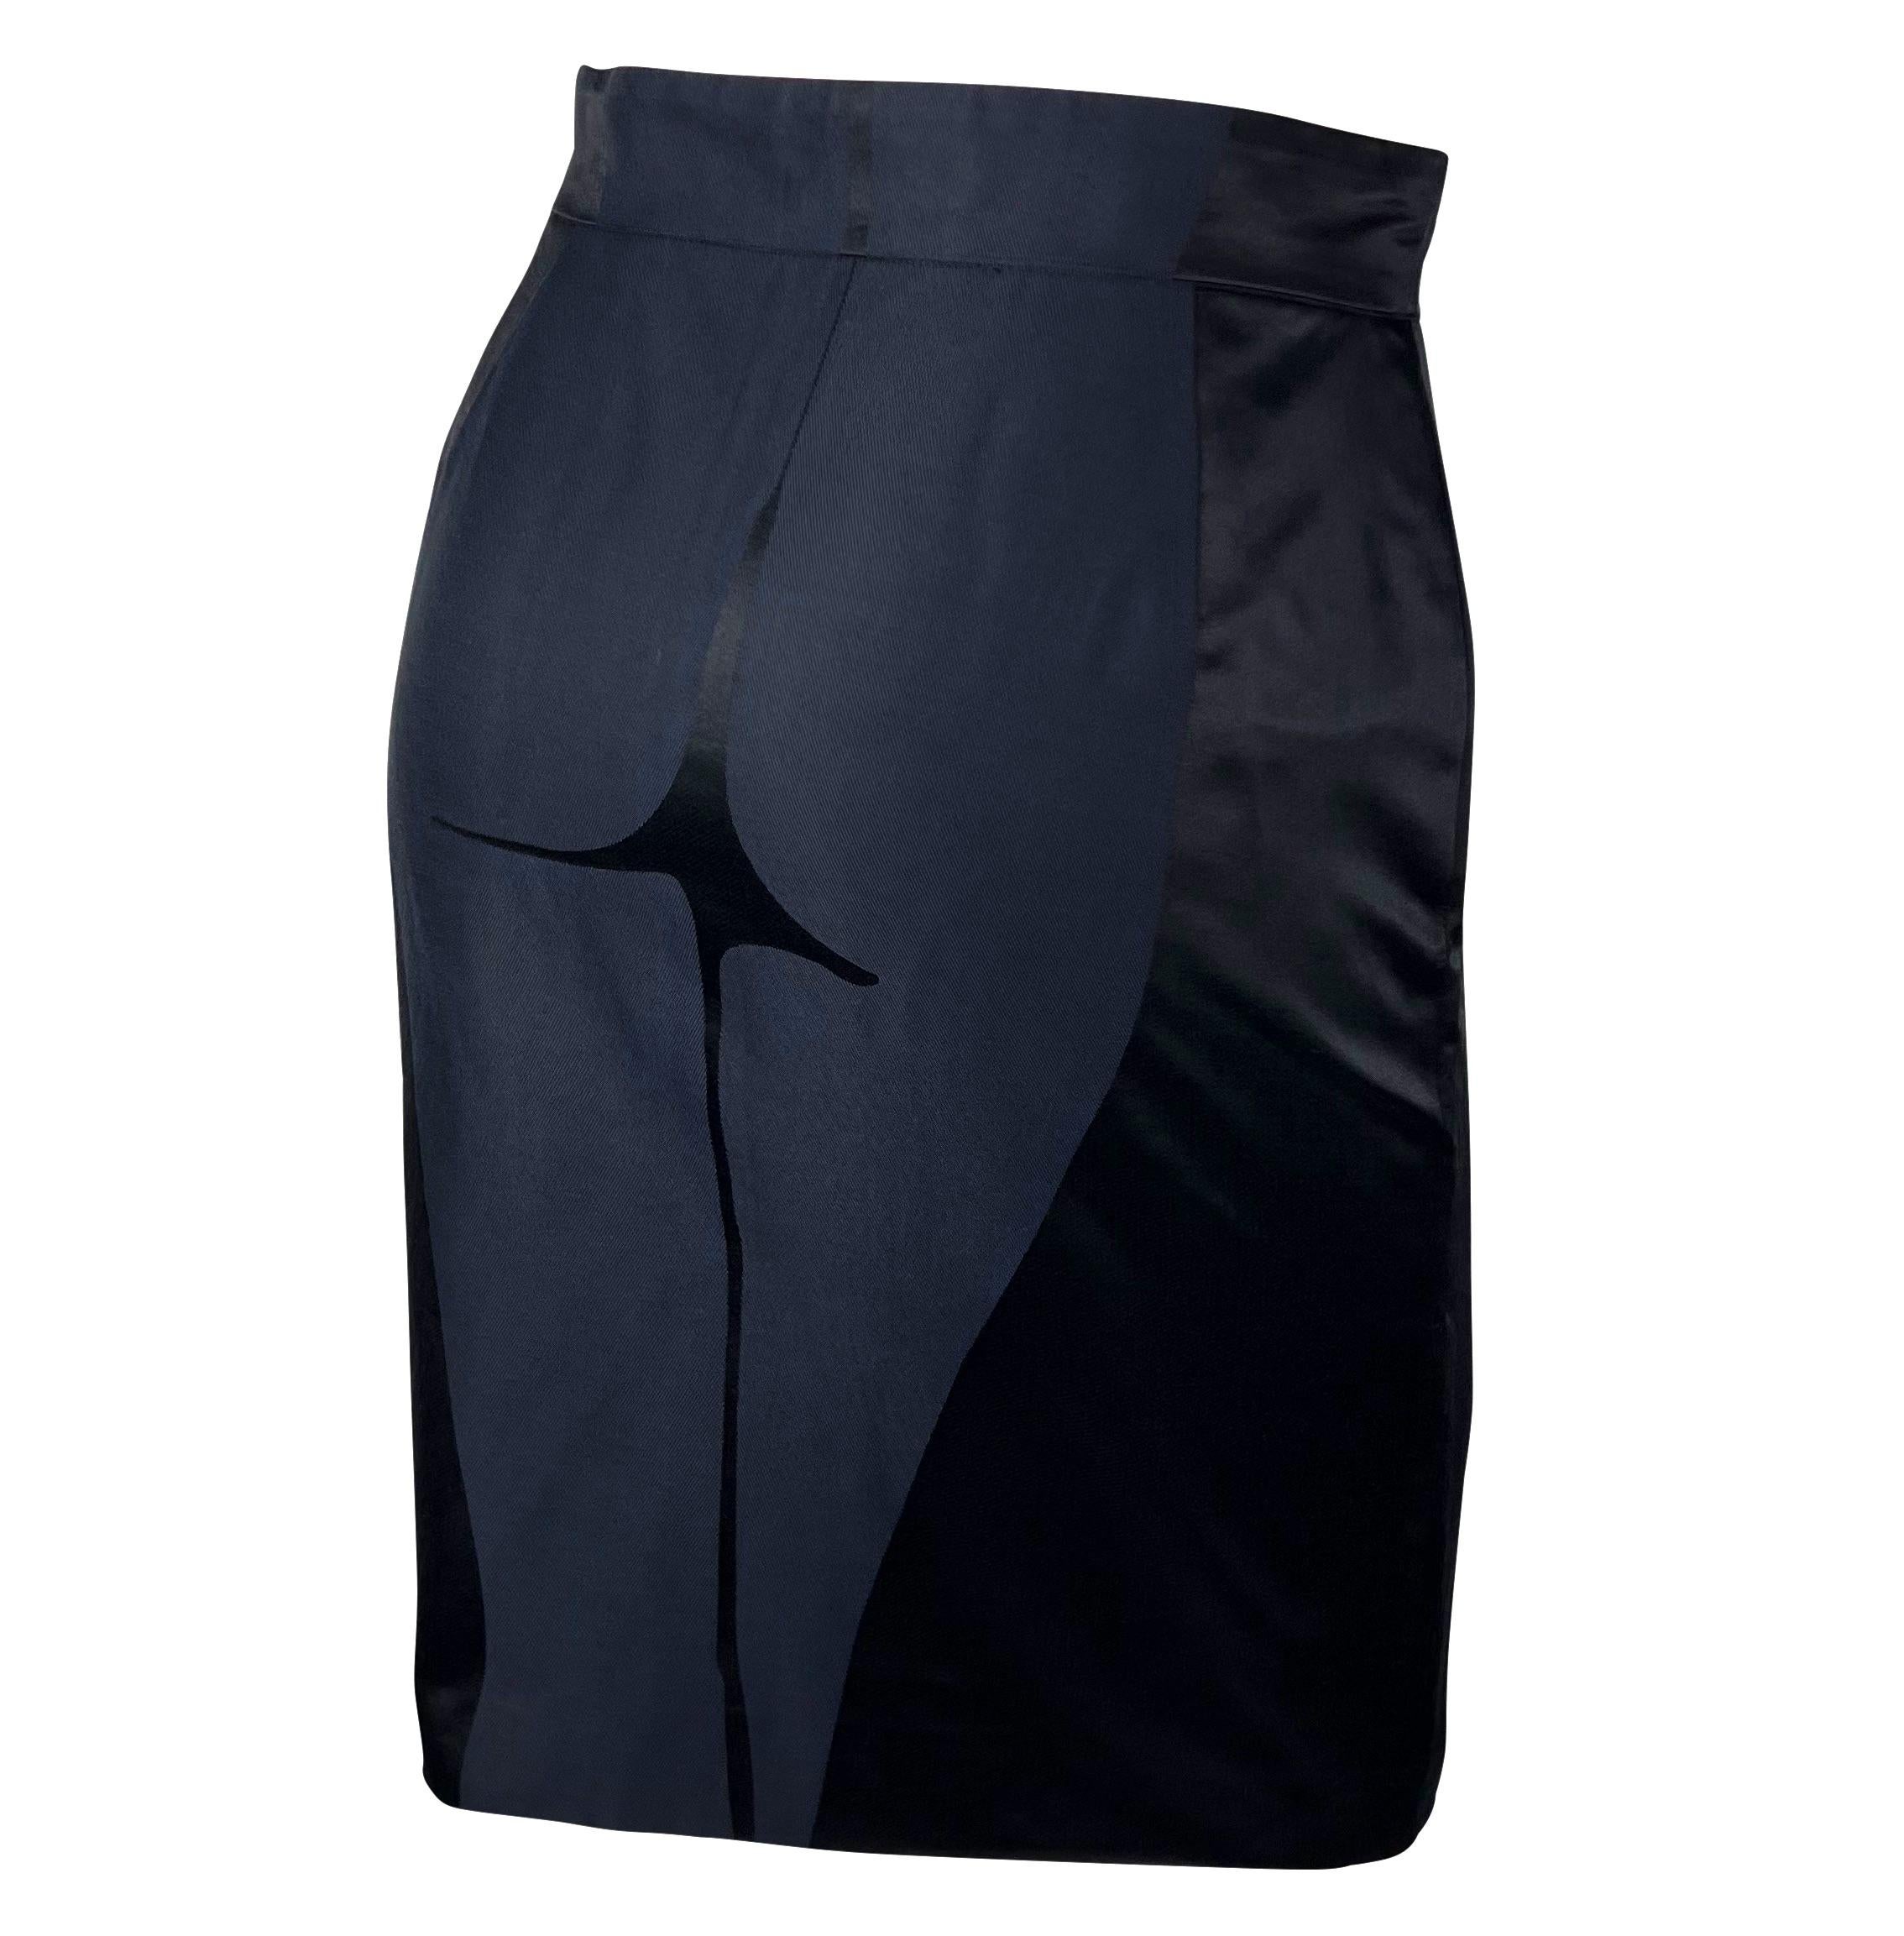 Black S/S 2003 Yves Saint Laurent by Tom Ford Female Body Print Runway Skirt For Sale